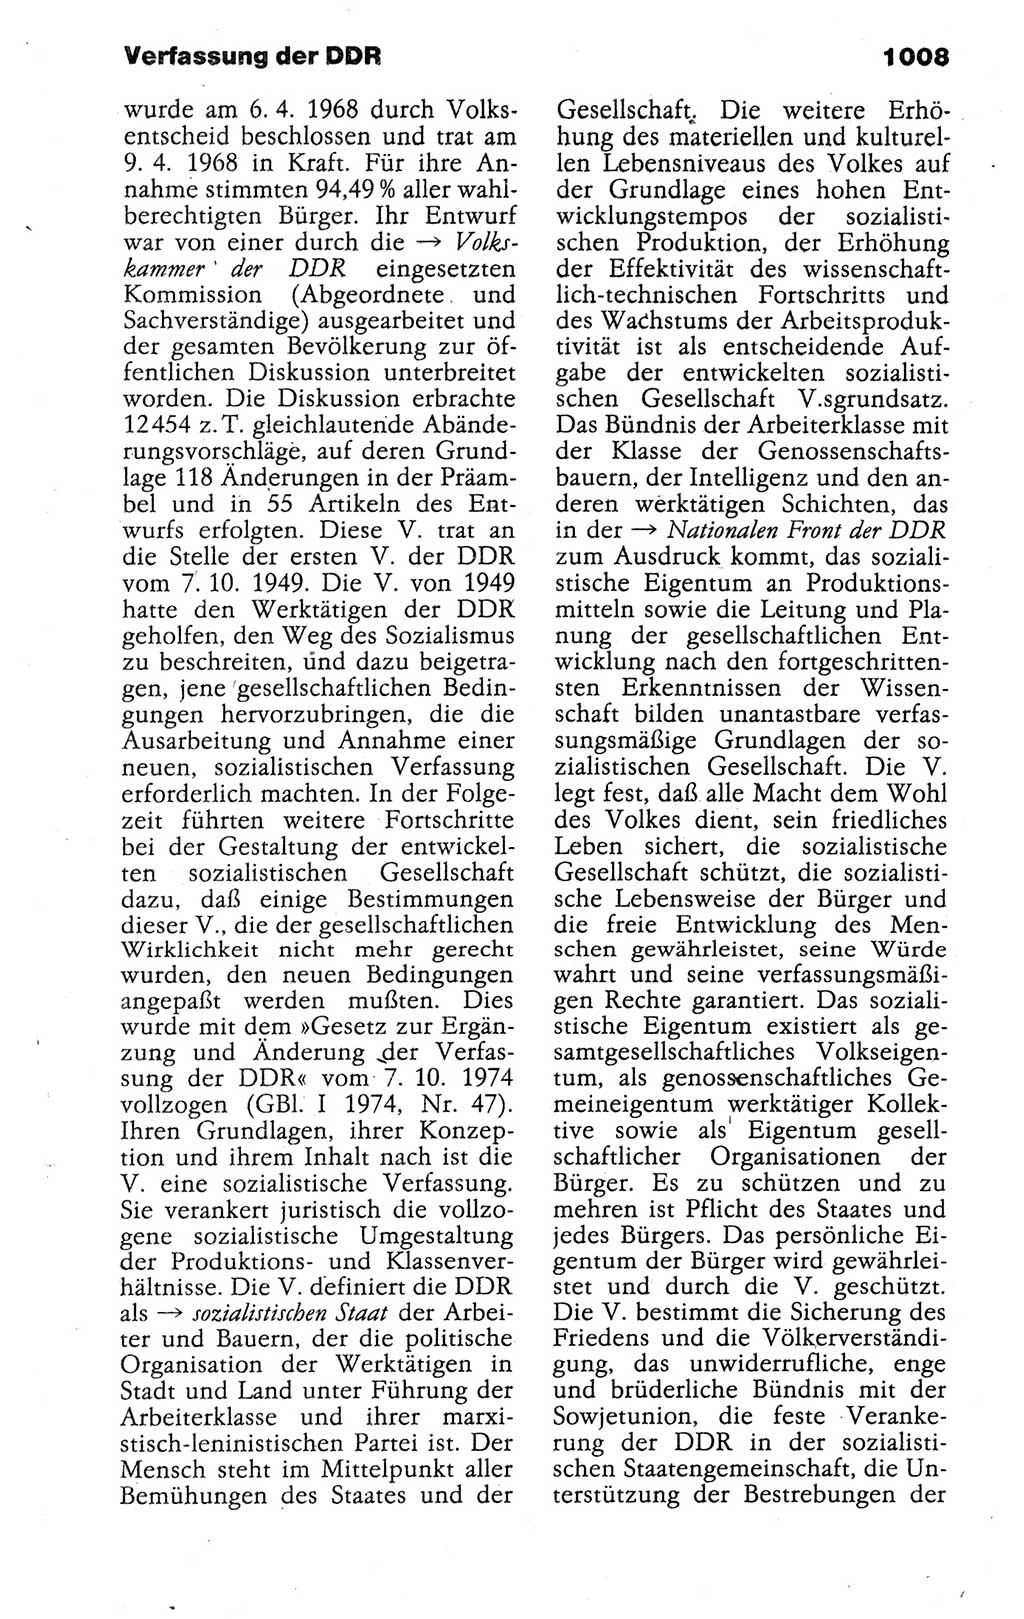 Kleines politisches Wörterbuch [Deutsche Demokratische Republik (DDR)] 1988, Seite 1008 (Kl. pol. Wb. DDR 1988, S. 1008)